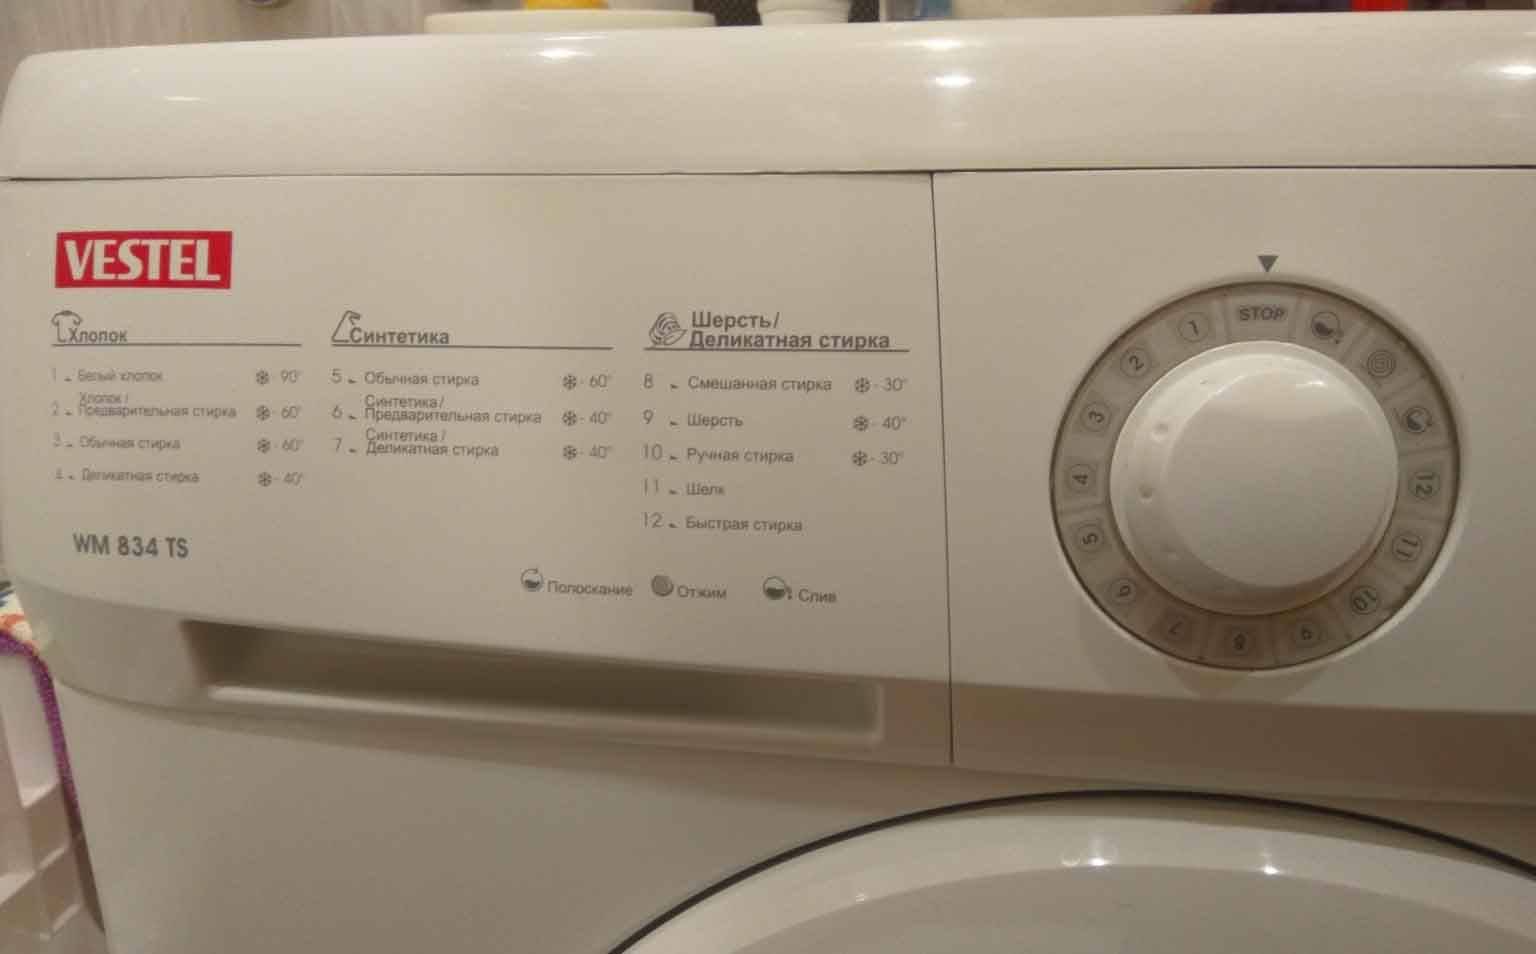 Ремонт стиральной машины vestel своими руками